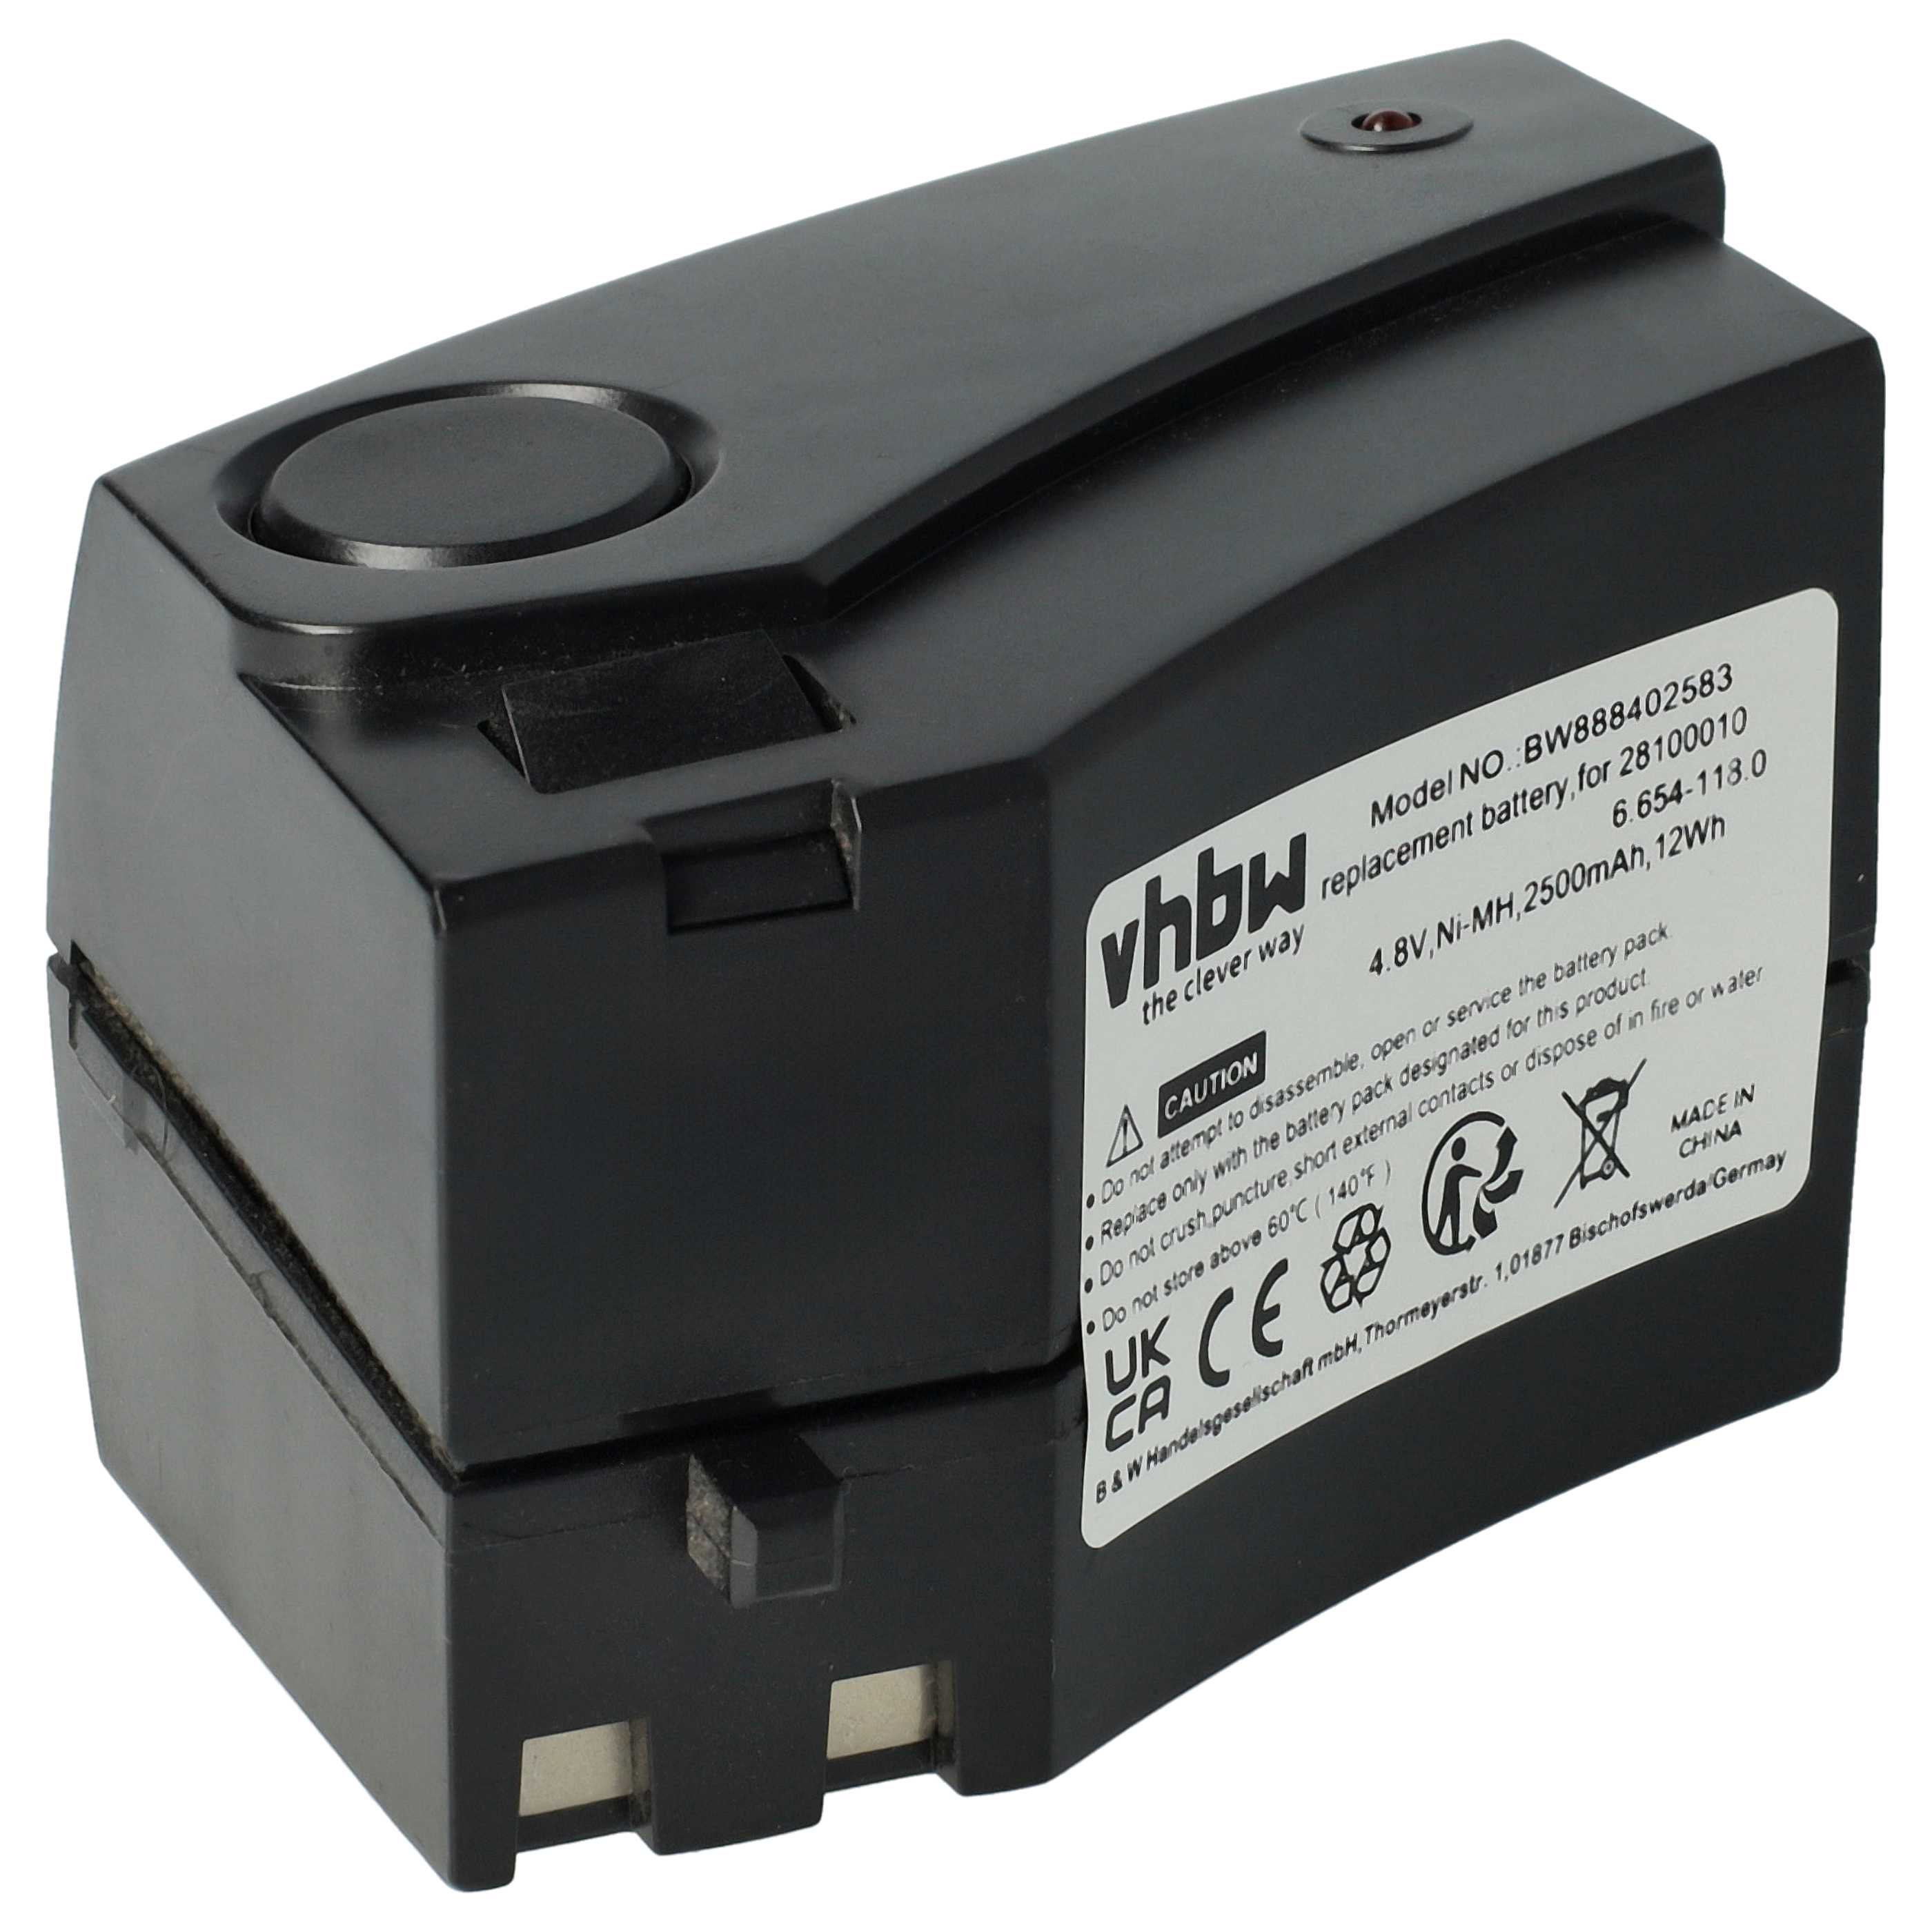 Batterie remplace Kärcher GP 160SCHE, 1.258-505.0, 28100010, 6.654-118.0 pour aspirateur - 2500mAh 4,8V NiMH